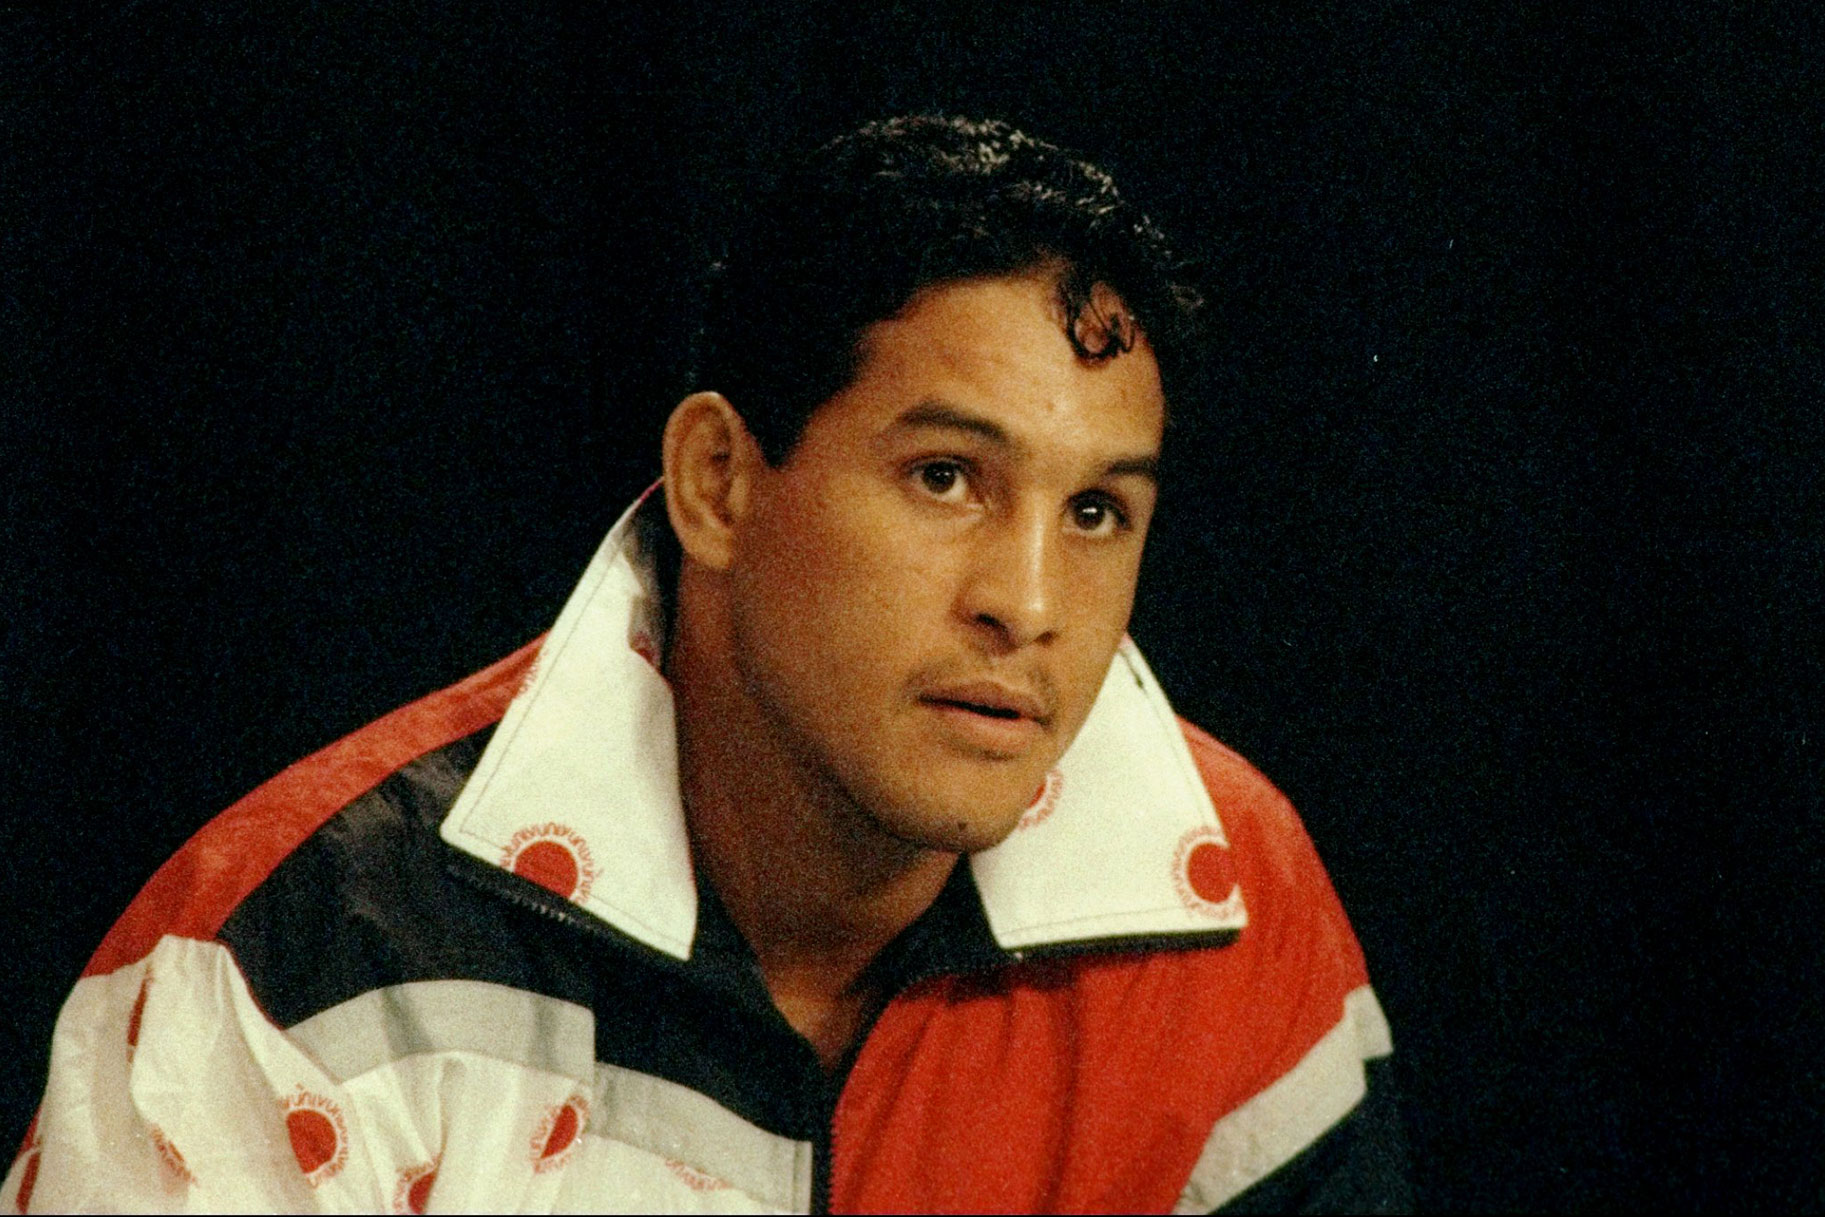 El flamboyance i el talent de Boxer Hector ‘Macho’ Camacho a l’anell també el van conduir per un camí problemàtic fora d’ell